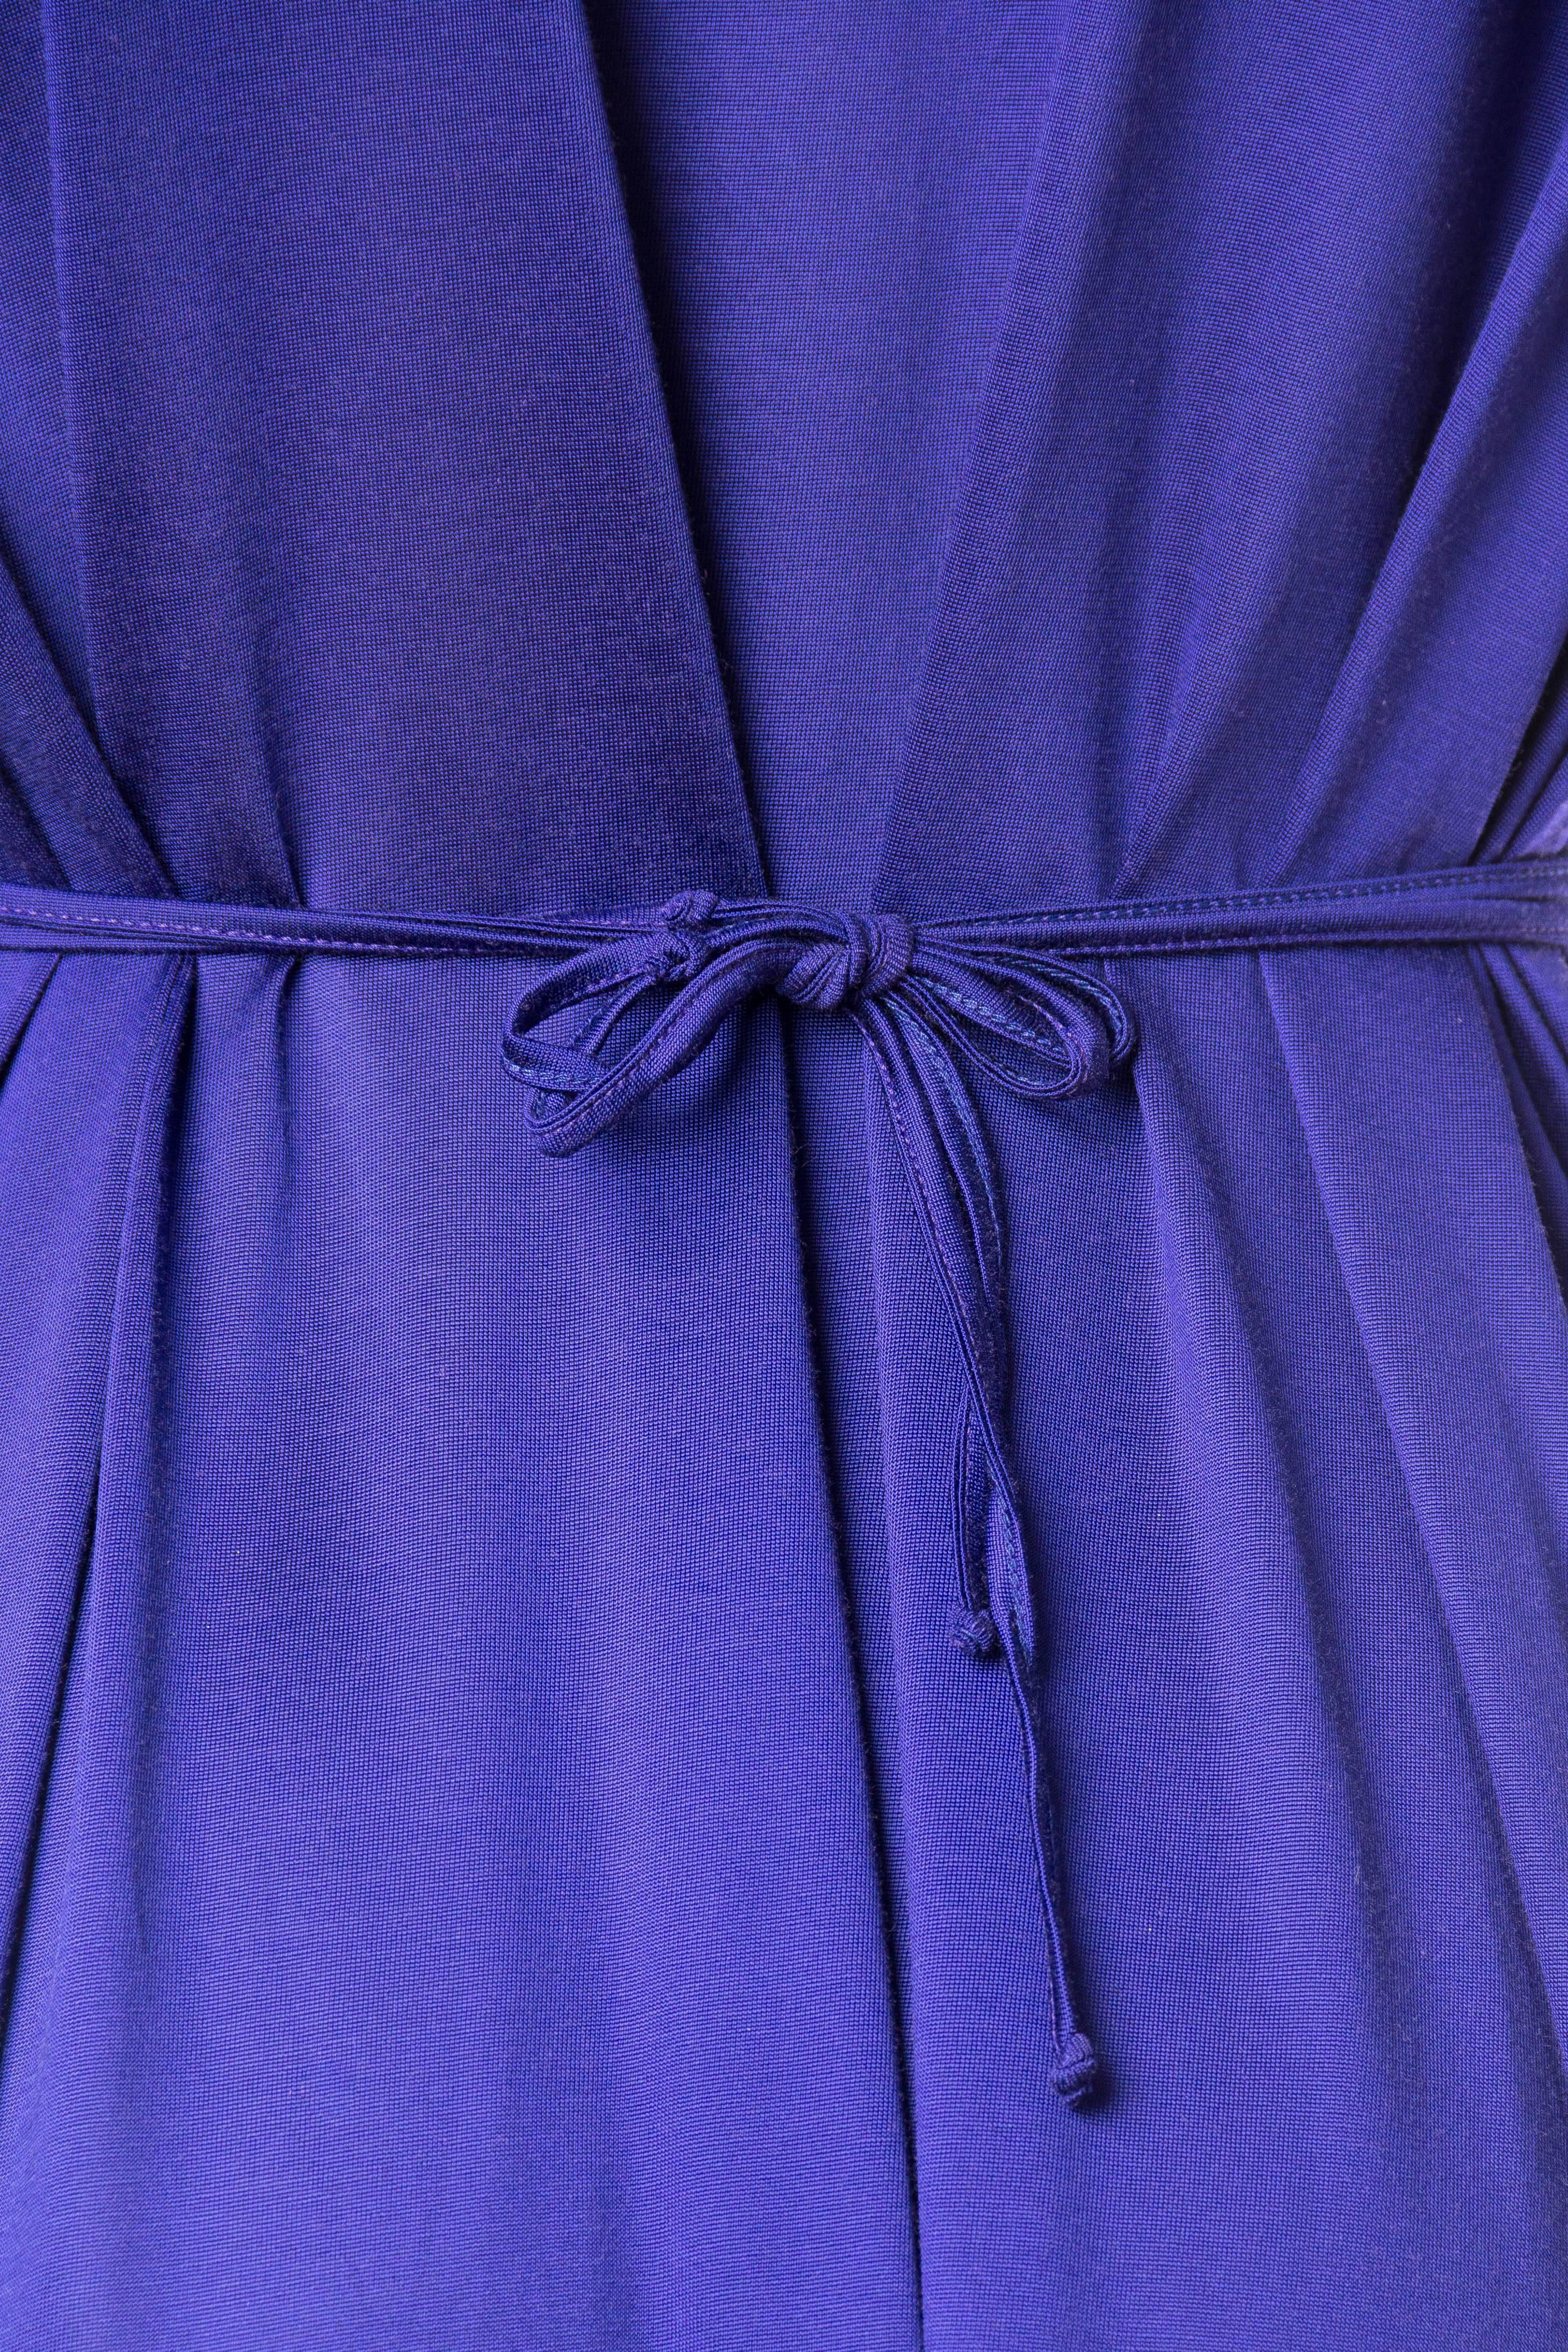 1990S JIL SANDER Sapphire Blue  Jersey Empire Waist Drawstring Dress 4